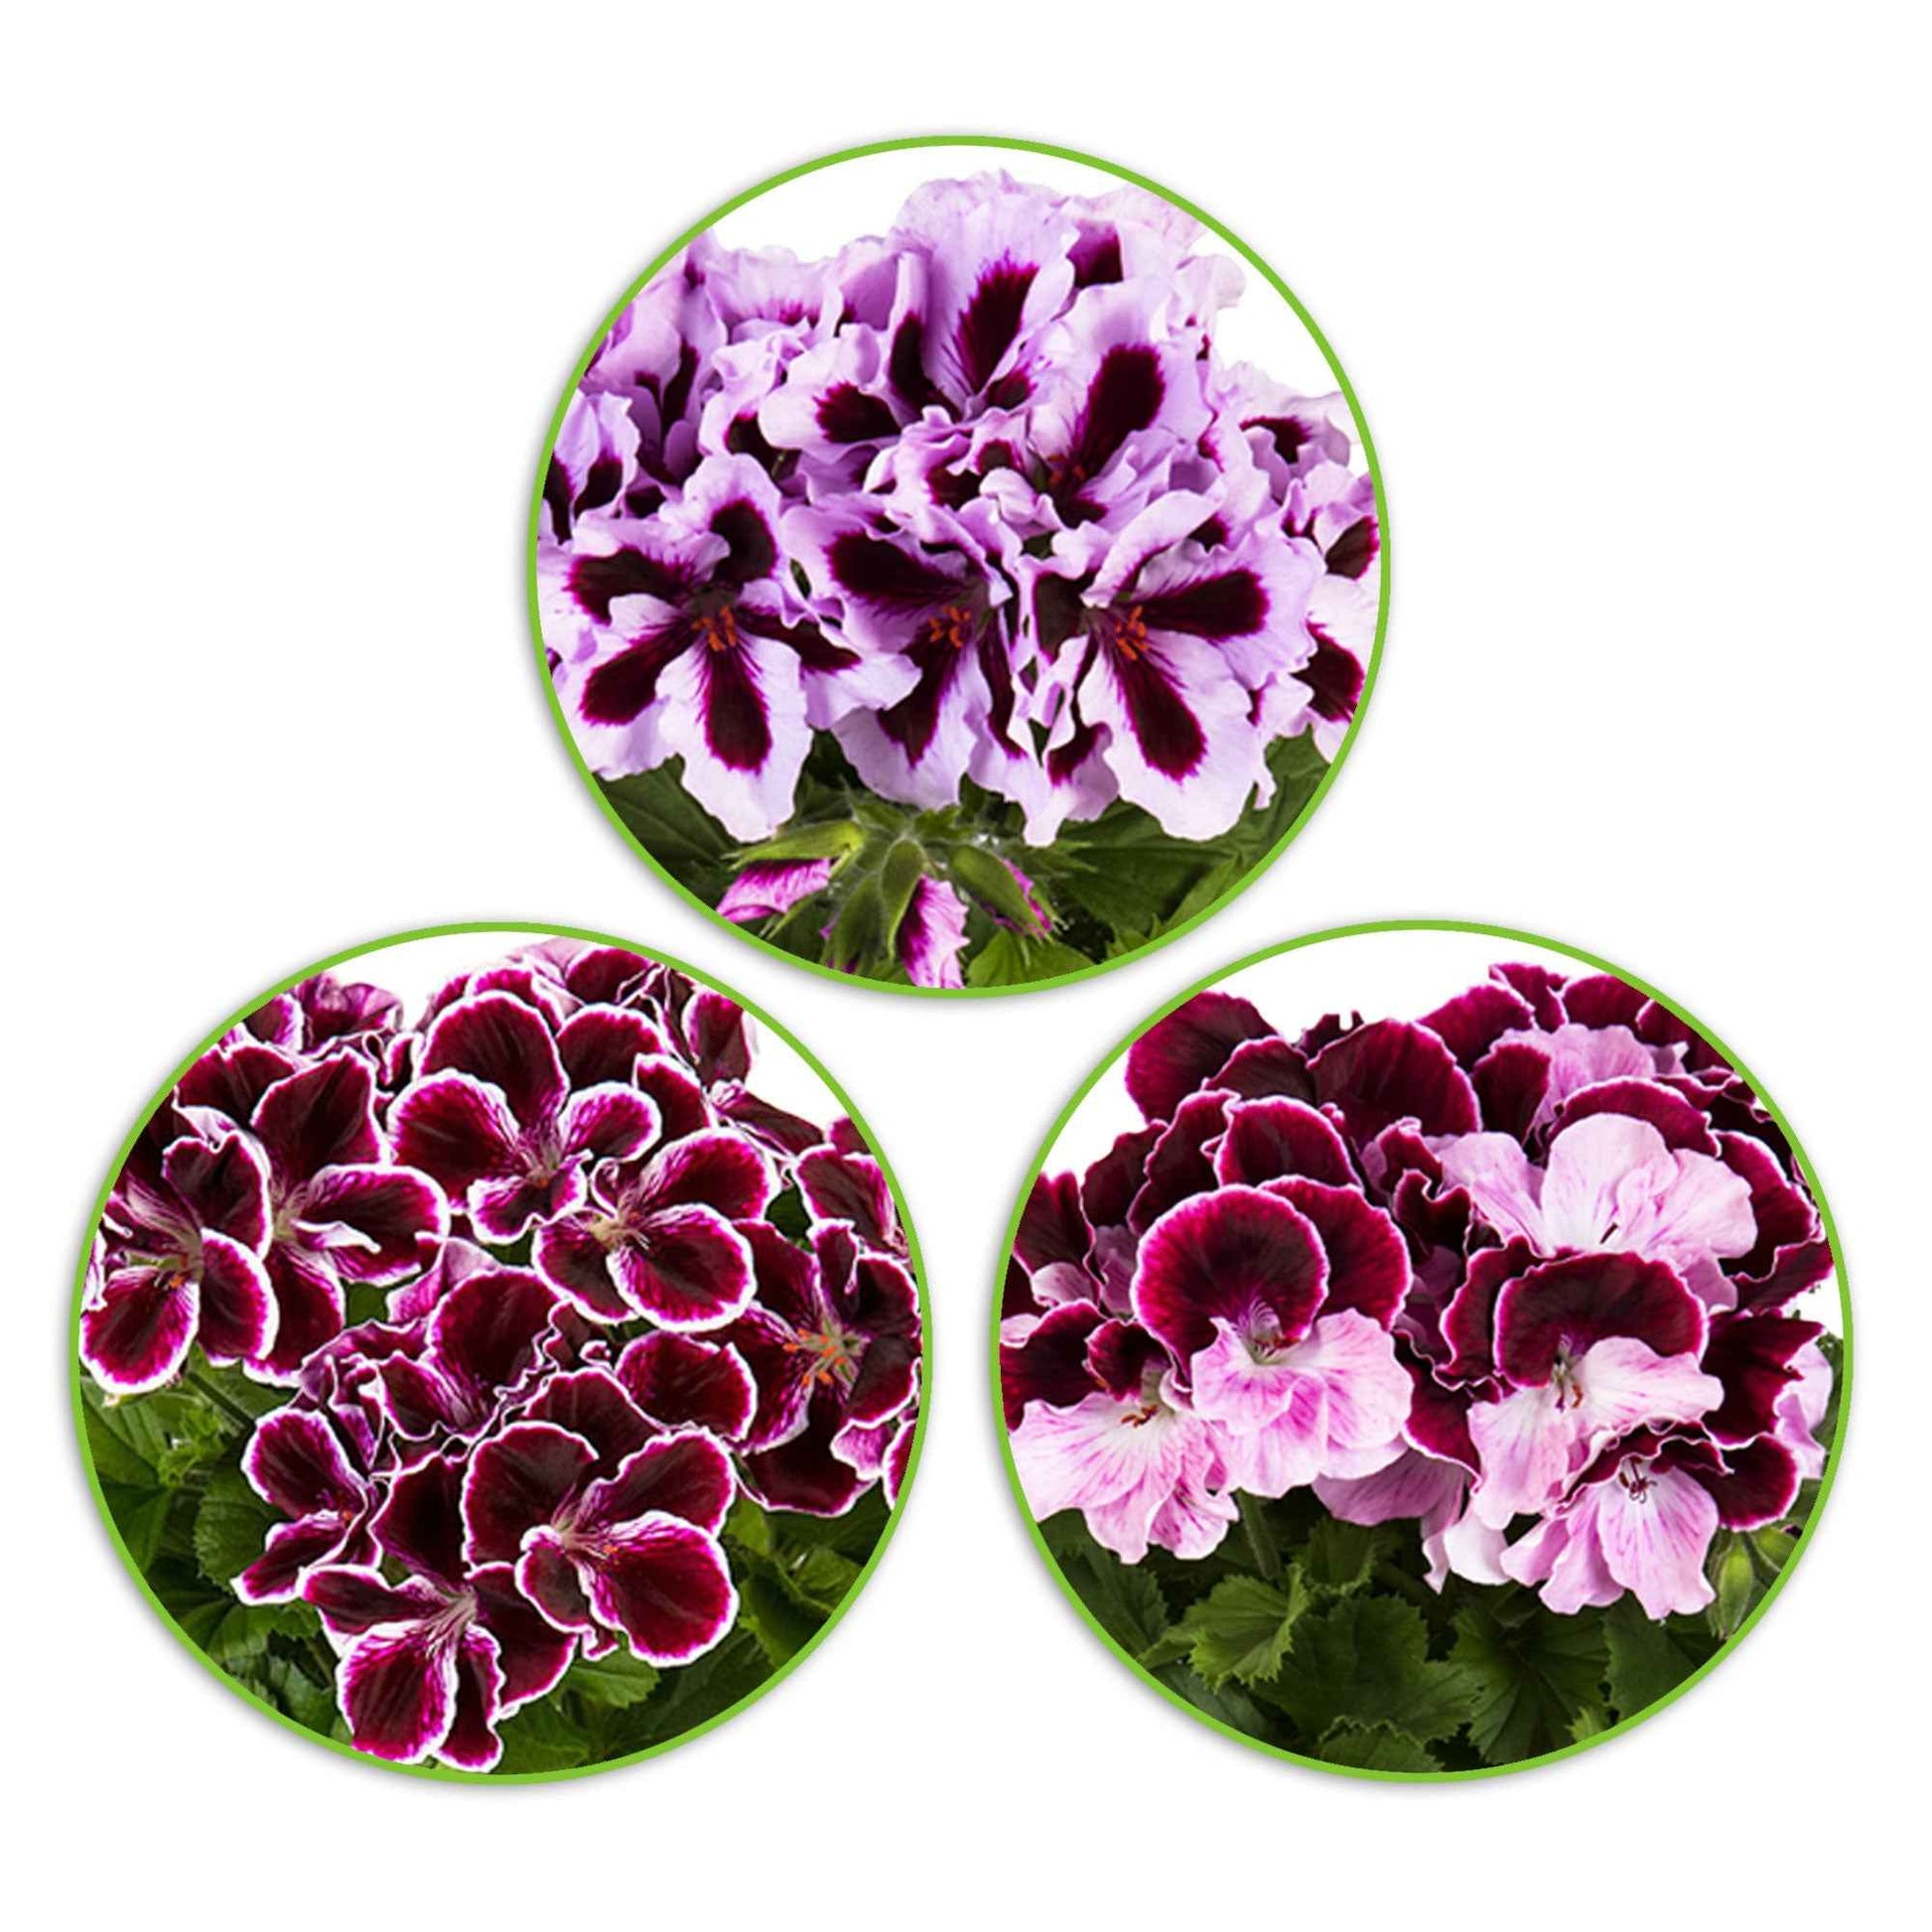 3x Französische Geranie Pelargonium 'Imperial' + 'Jeanette' + 'Patricia' lila-rosa-weiβ - Beetpflanzen